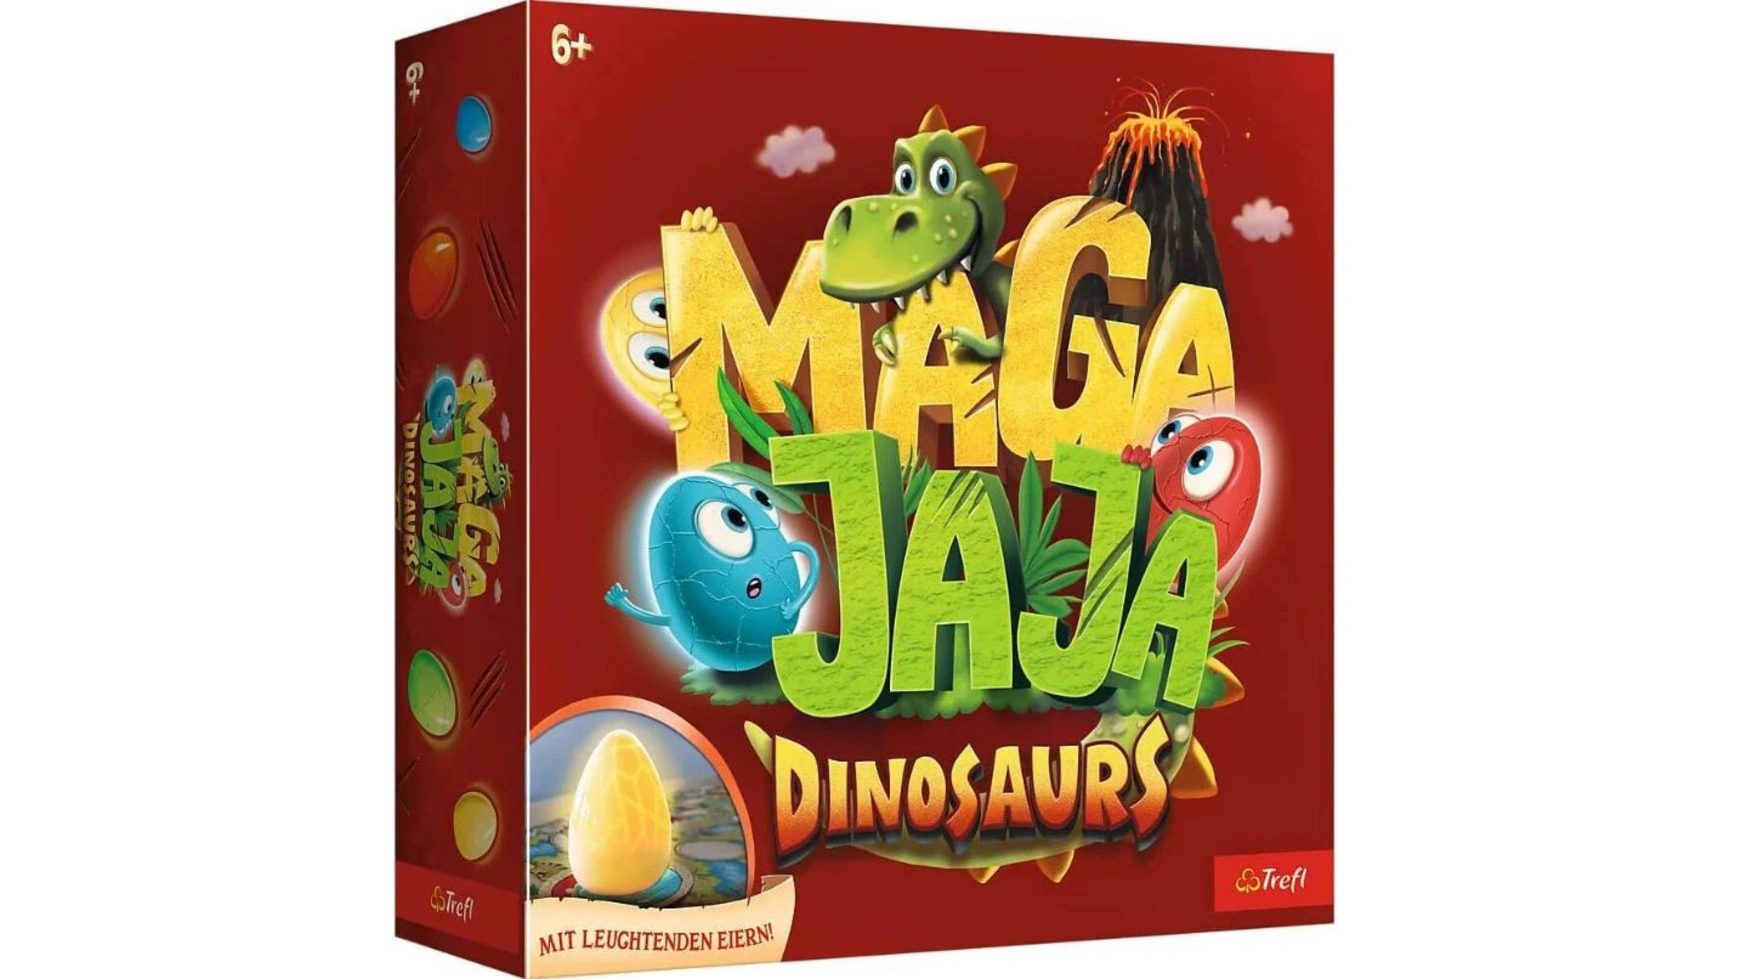 Trefl Динозавры Мага Джаджа активные игры moby kids игра комнатная дино 2 в 1